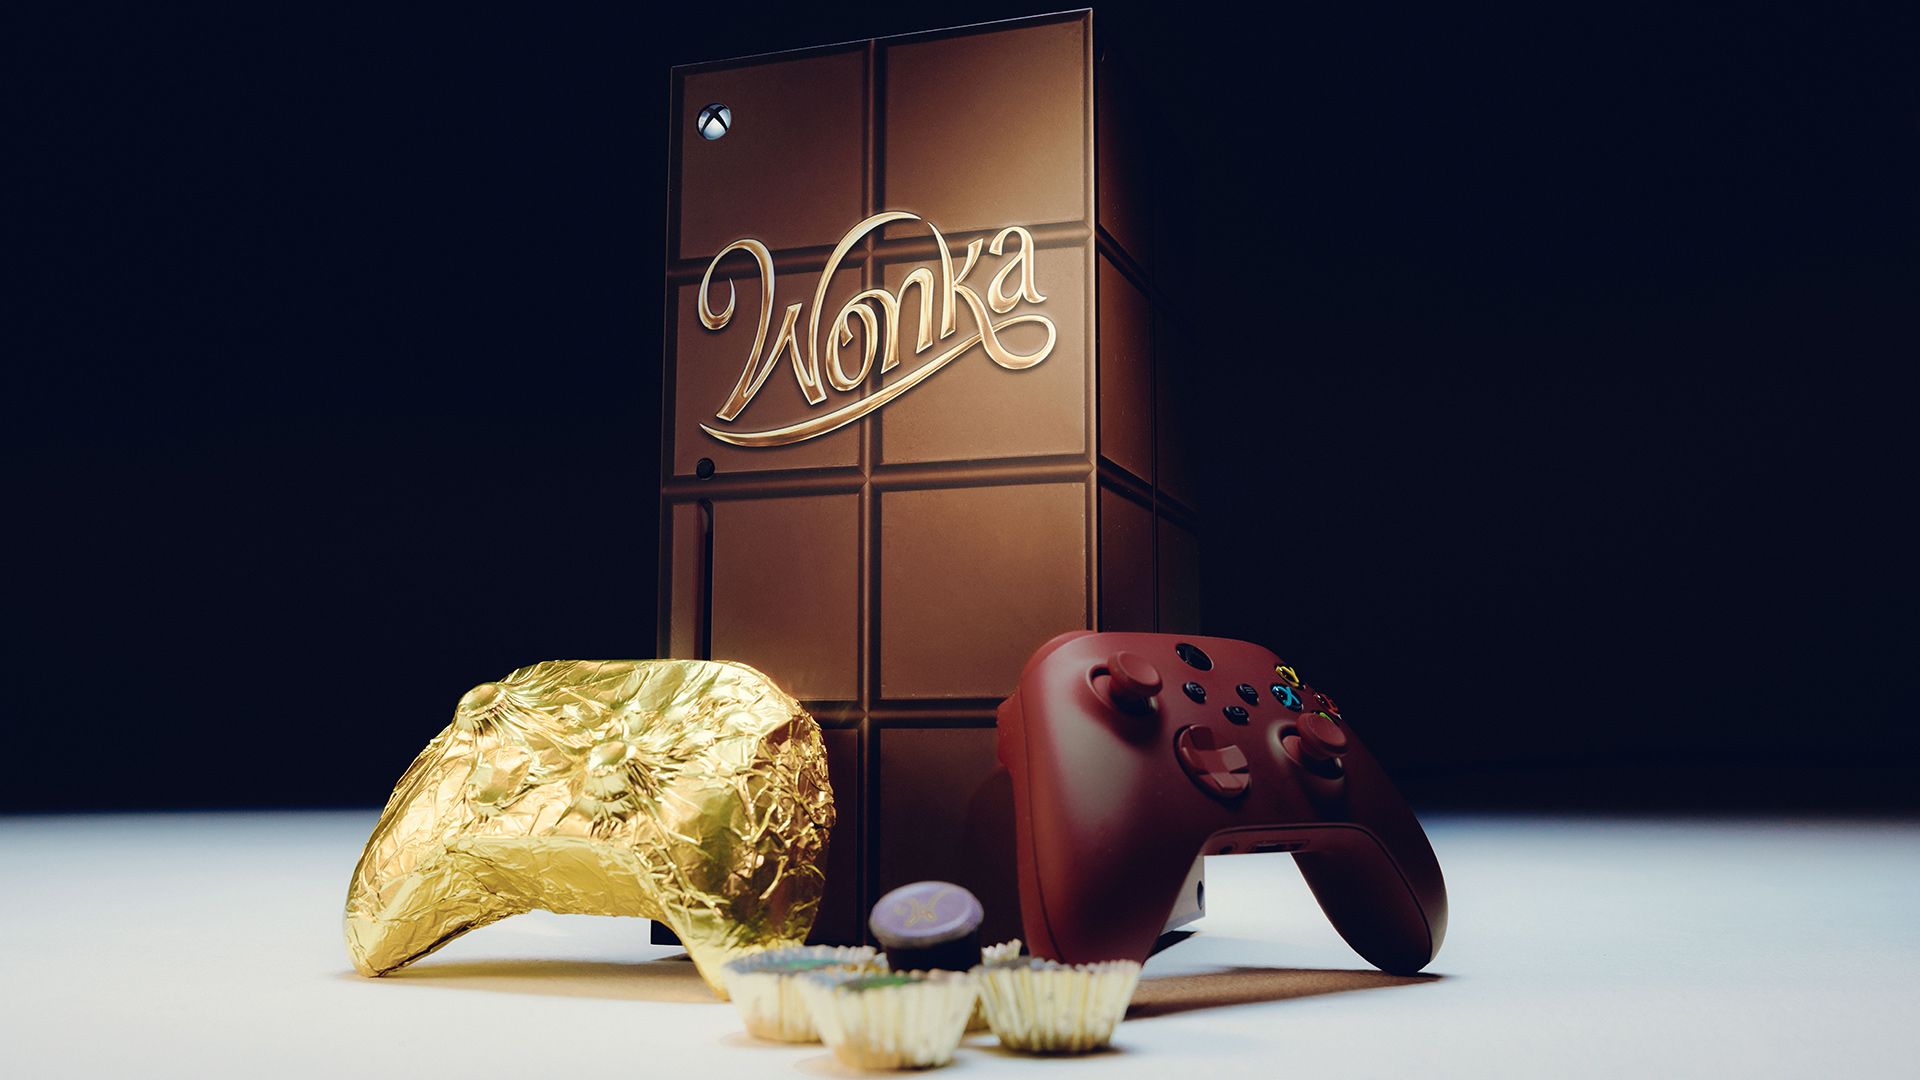 Xbox Series X: controller di cioccolato per Wonka - Gamesurf